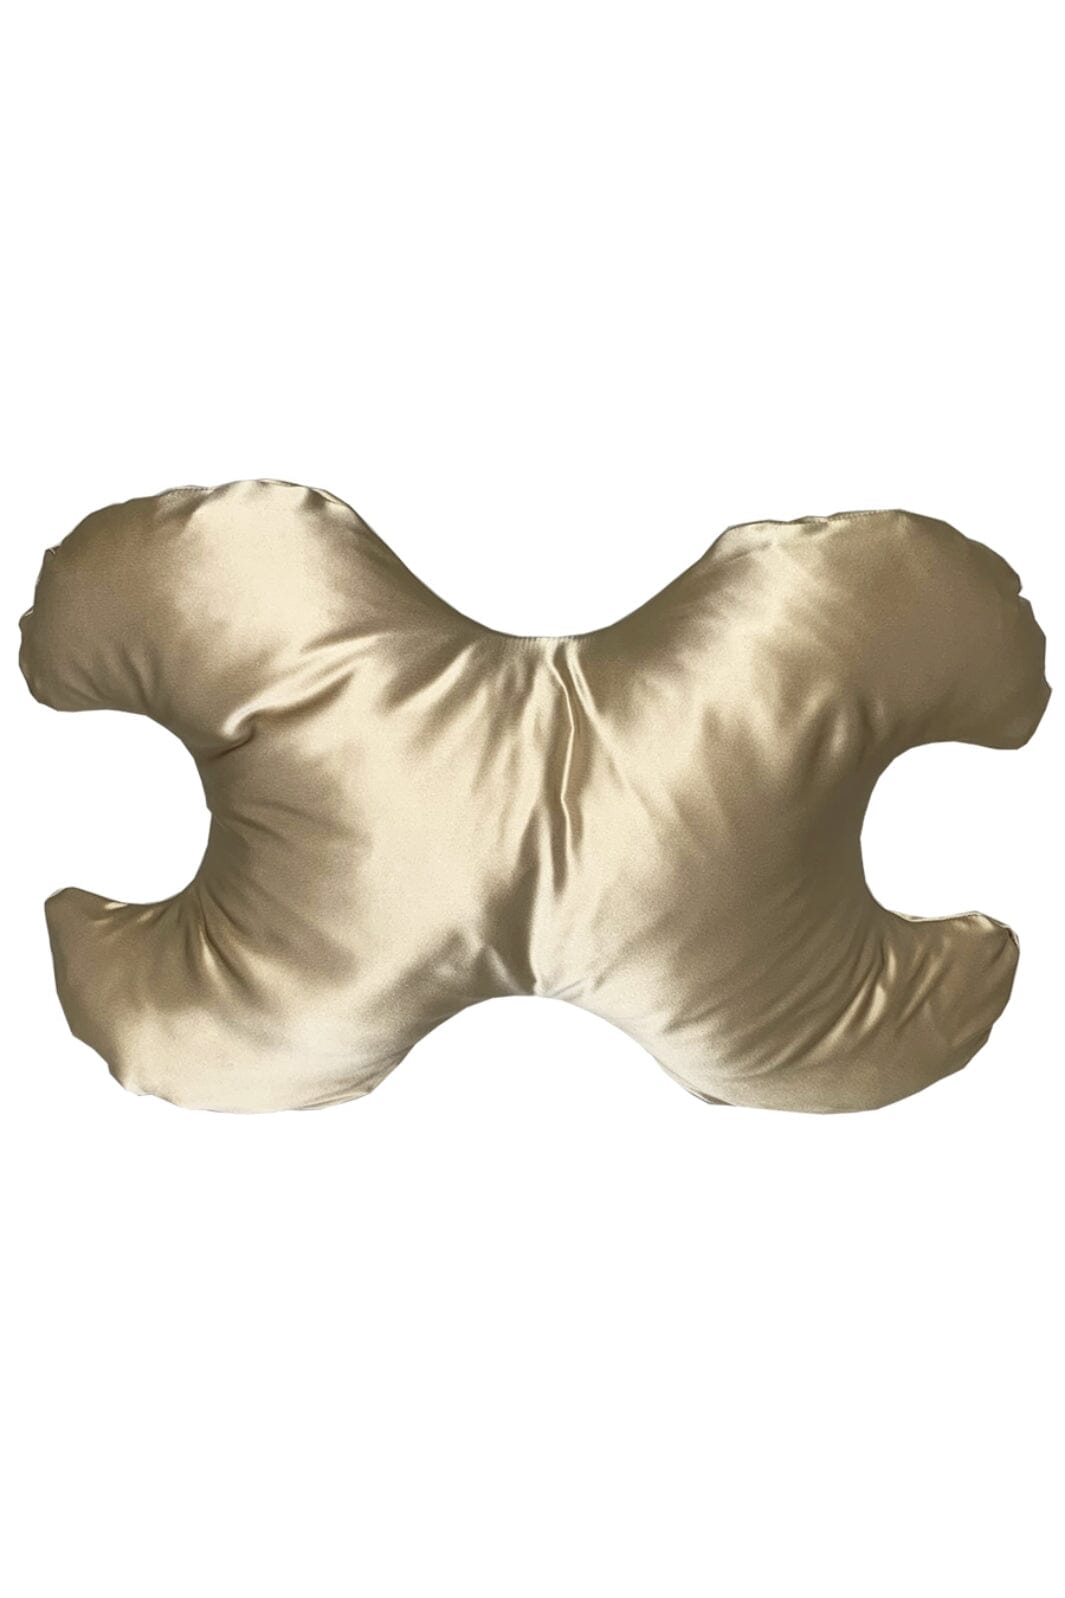 Save My Face - Le Grand - stor pude med 100% silkebetræk Bronze Puder 